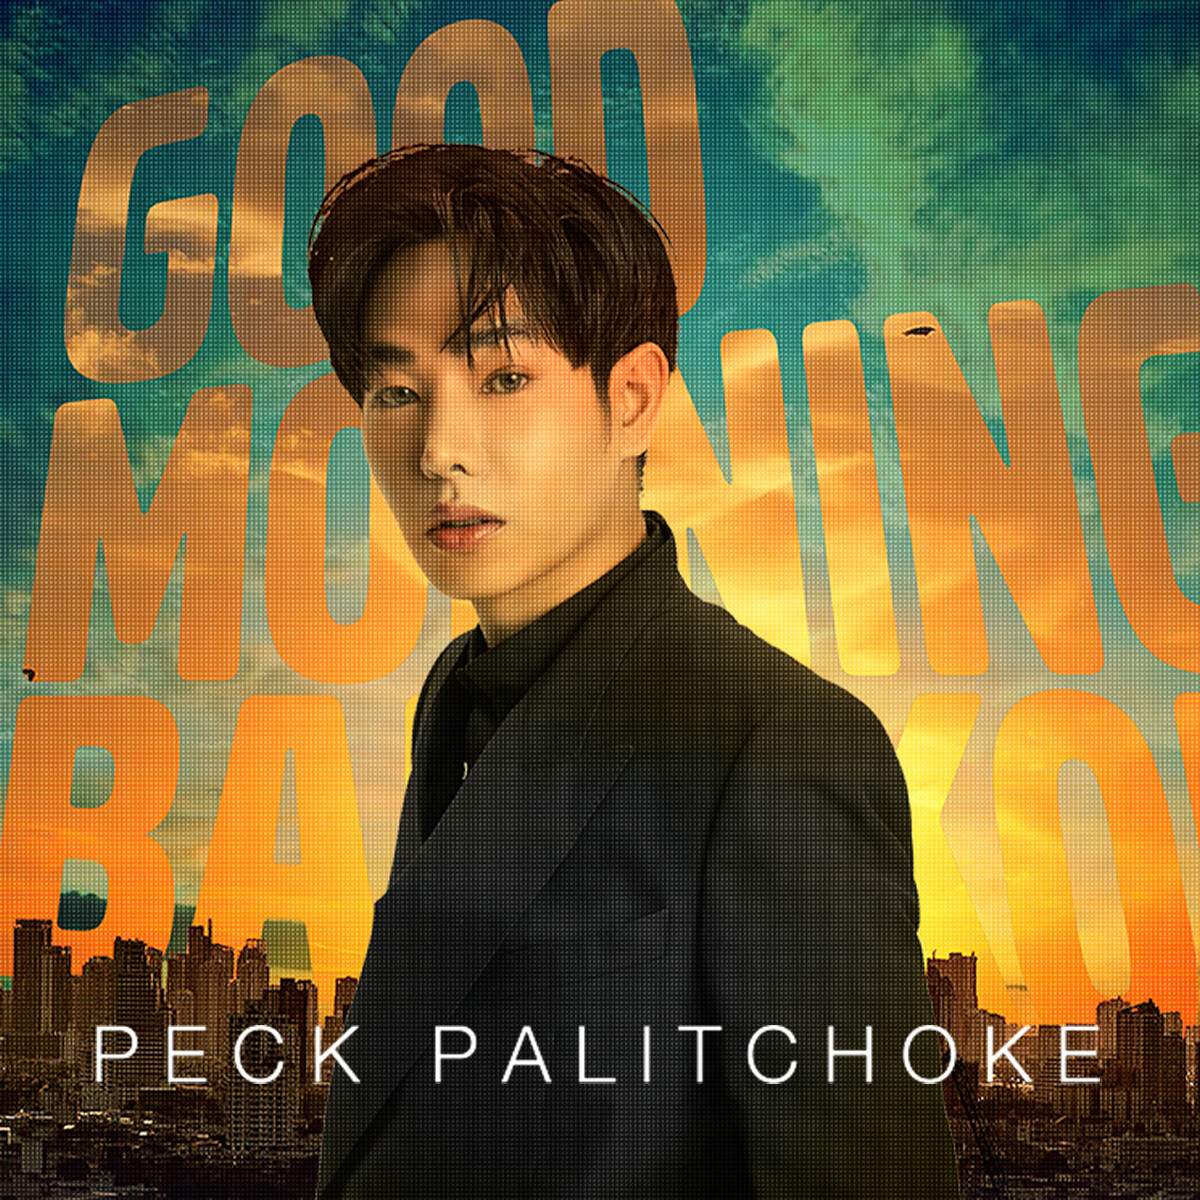 เตรียมตัวของคุณให้พร้อม!!!! แล้วมาพบกับ บอดี้สแลม, โปเตโต้, ปาล์มมี่และ เป๊ก ผลิตโชค ในChang Music Connection Presents “Good Morning Bangkok”